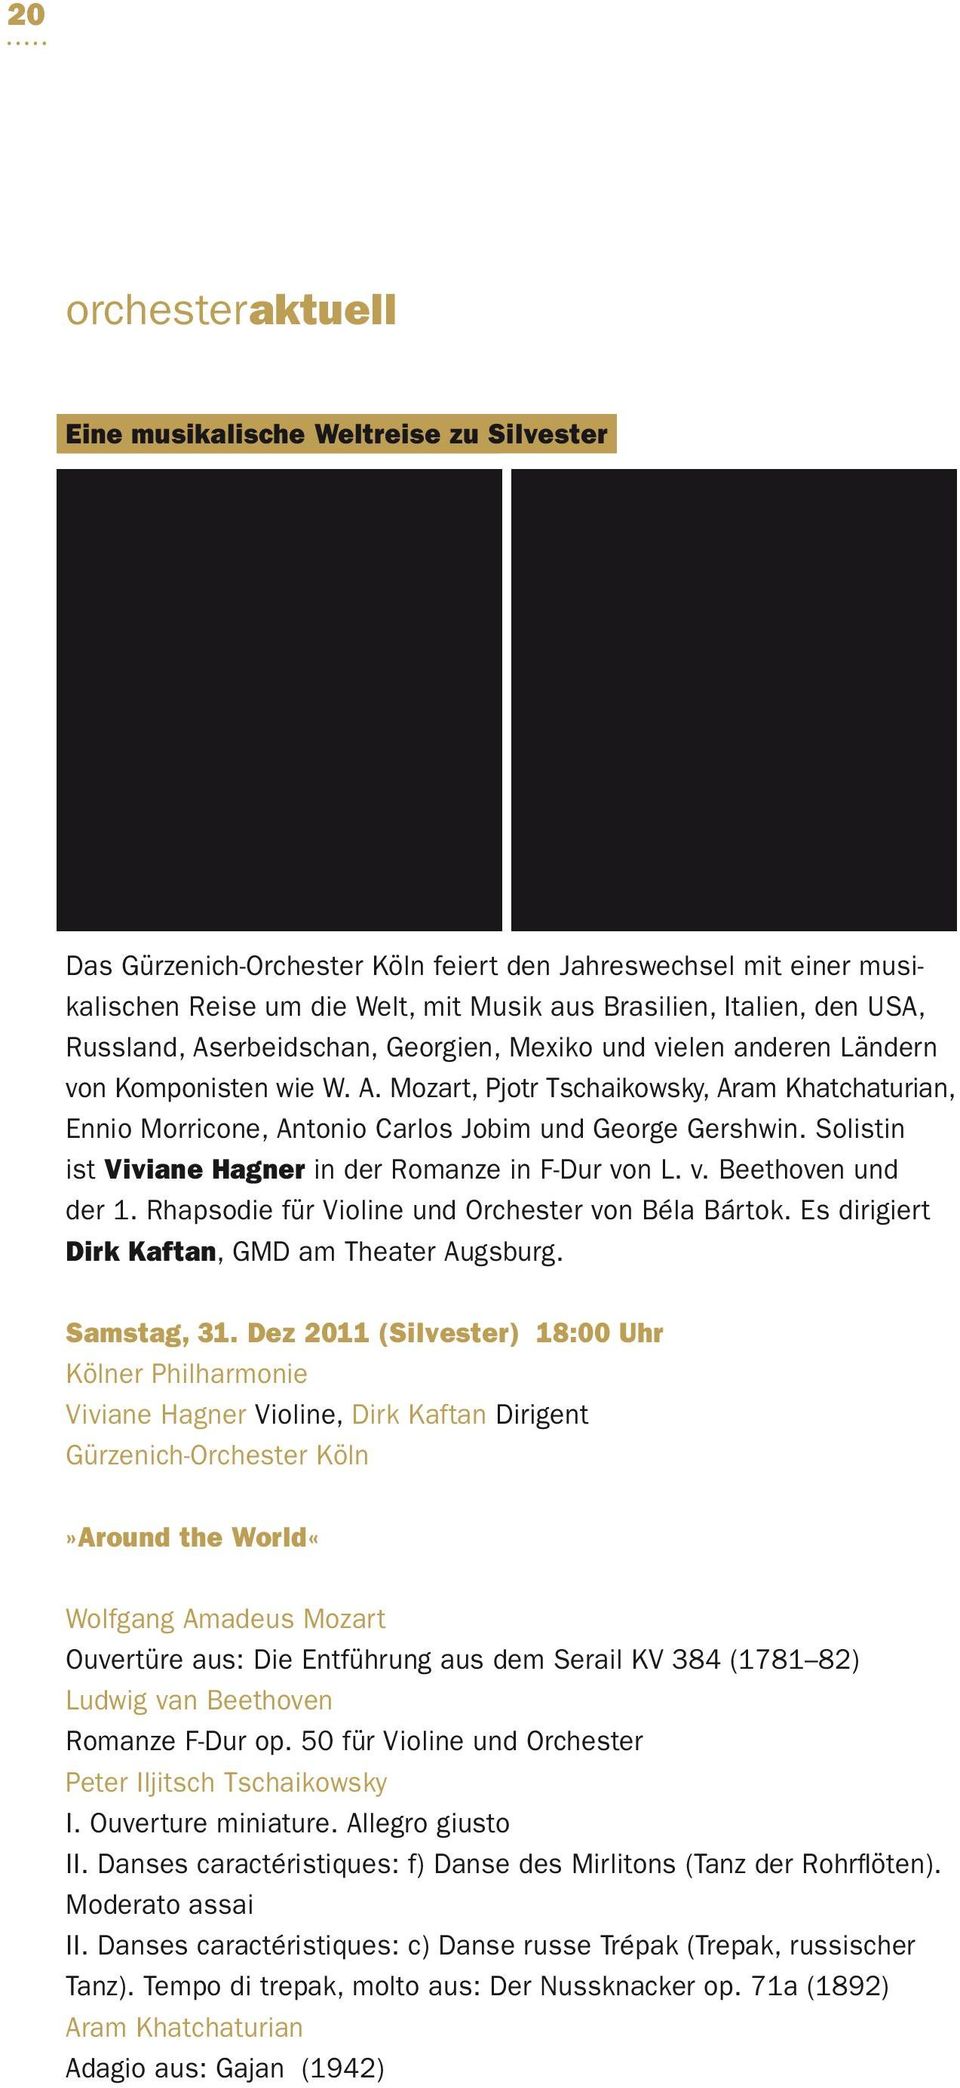 Solistin ist Viviane Hagner in der Romanze in F-Dur von L. v. Beethoven und der 1. Rhapsodie für Violine und Orchester von Béla Bártok. Es dirigiert Dirk Kaftan, GMD am Theater Augsburg. Samstag, 31.